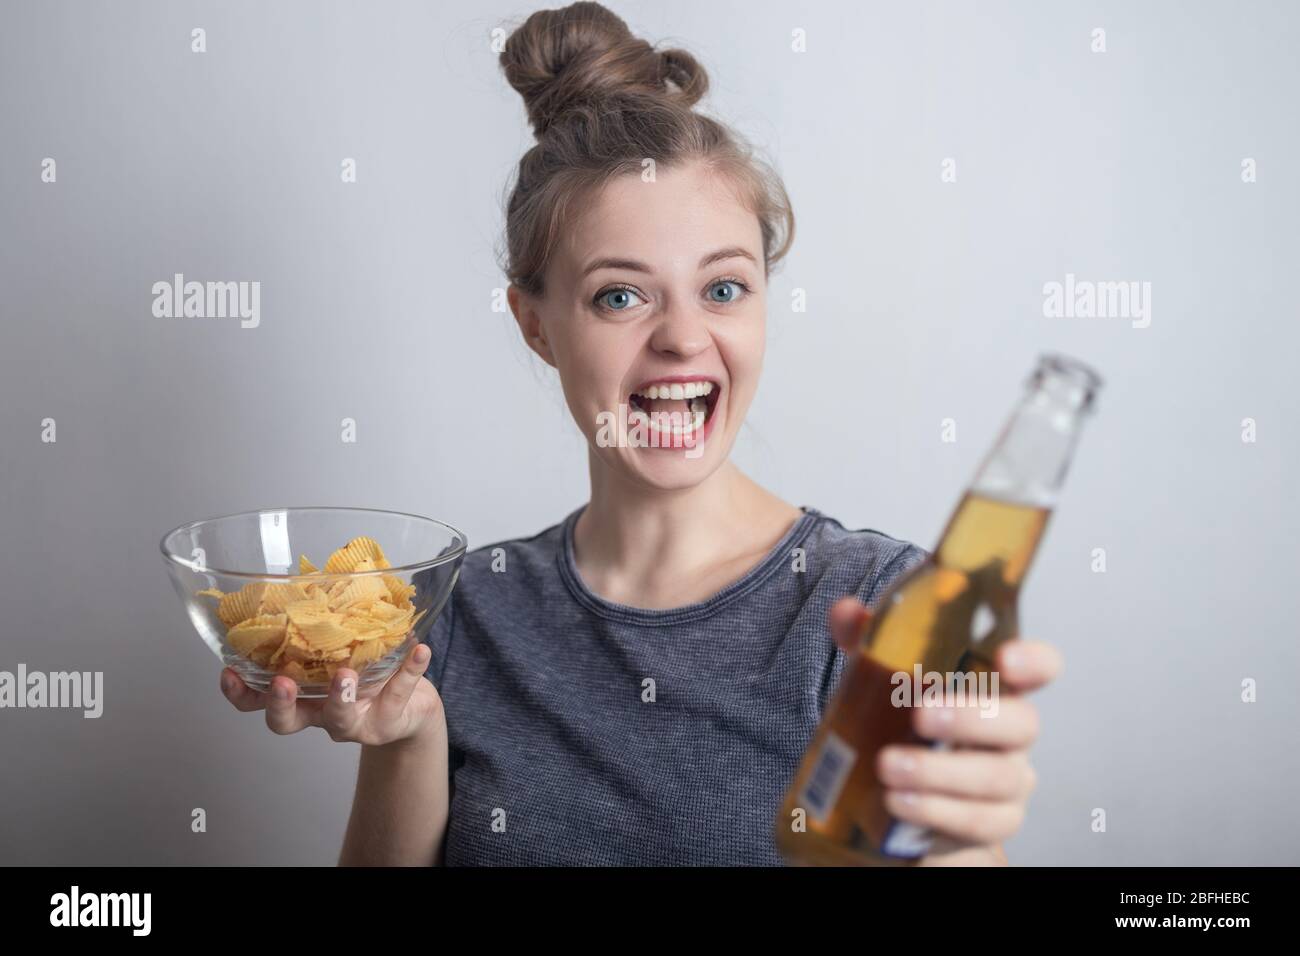 Sonriente joven mujer caucásica niña bebiendo una botella de cerveza y sosteniendo patatas fritas crujientes Foto de stock